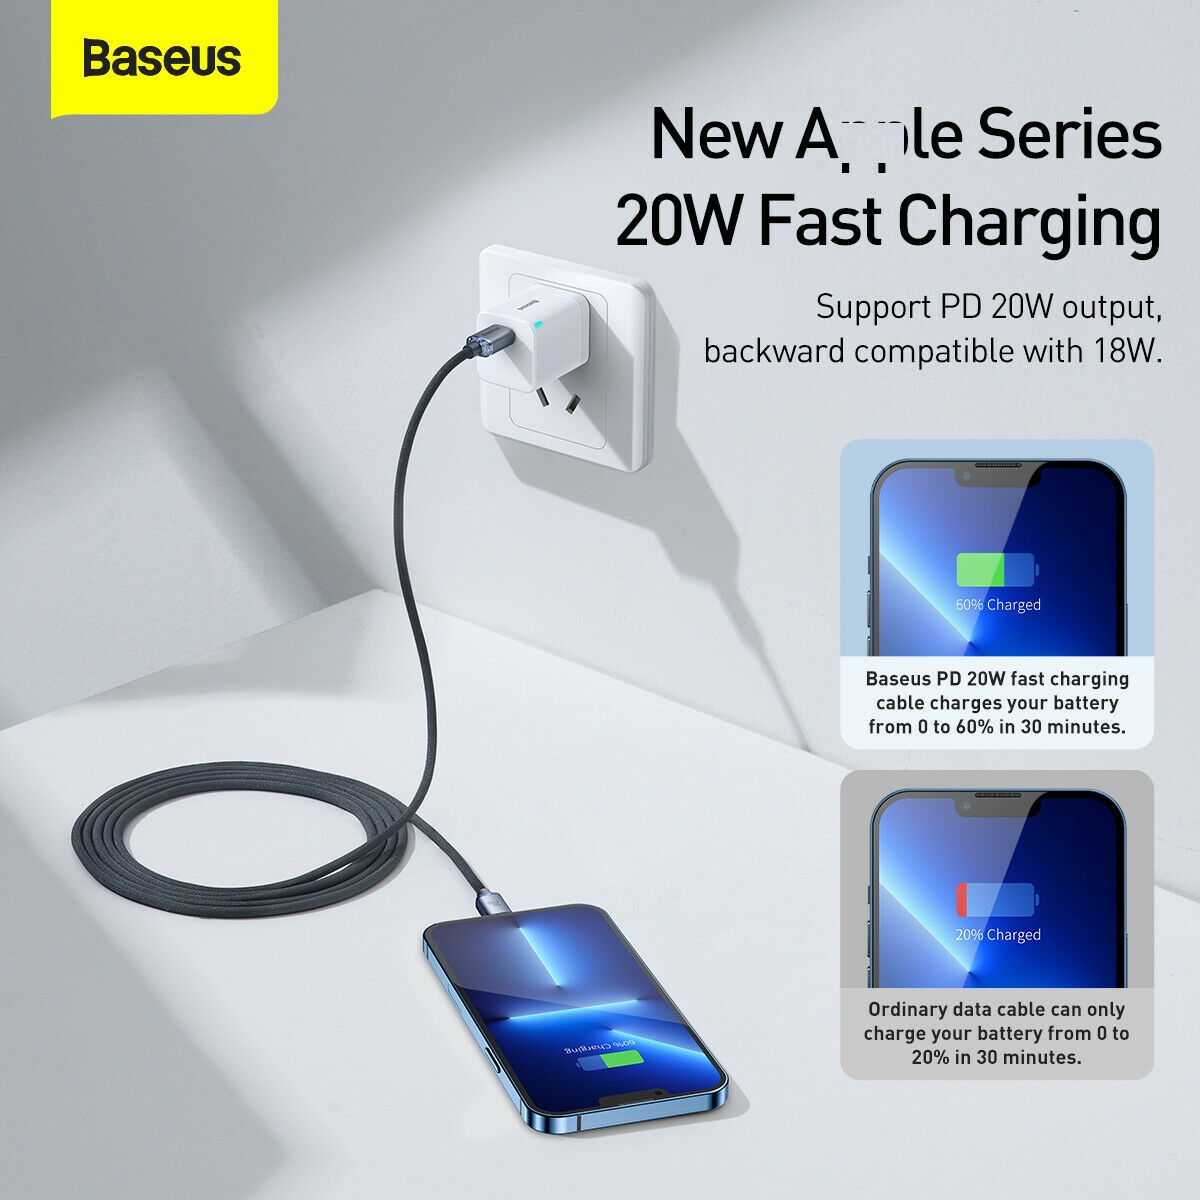 Cáp sạc nhanh và truyền dữ liệu Ba-se-us PD 20W, Ba-se-us Crystal Shine Series Fast Charging Data Cable C to iP 20W - Hàng chính hãng